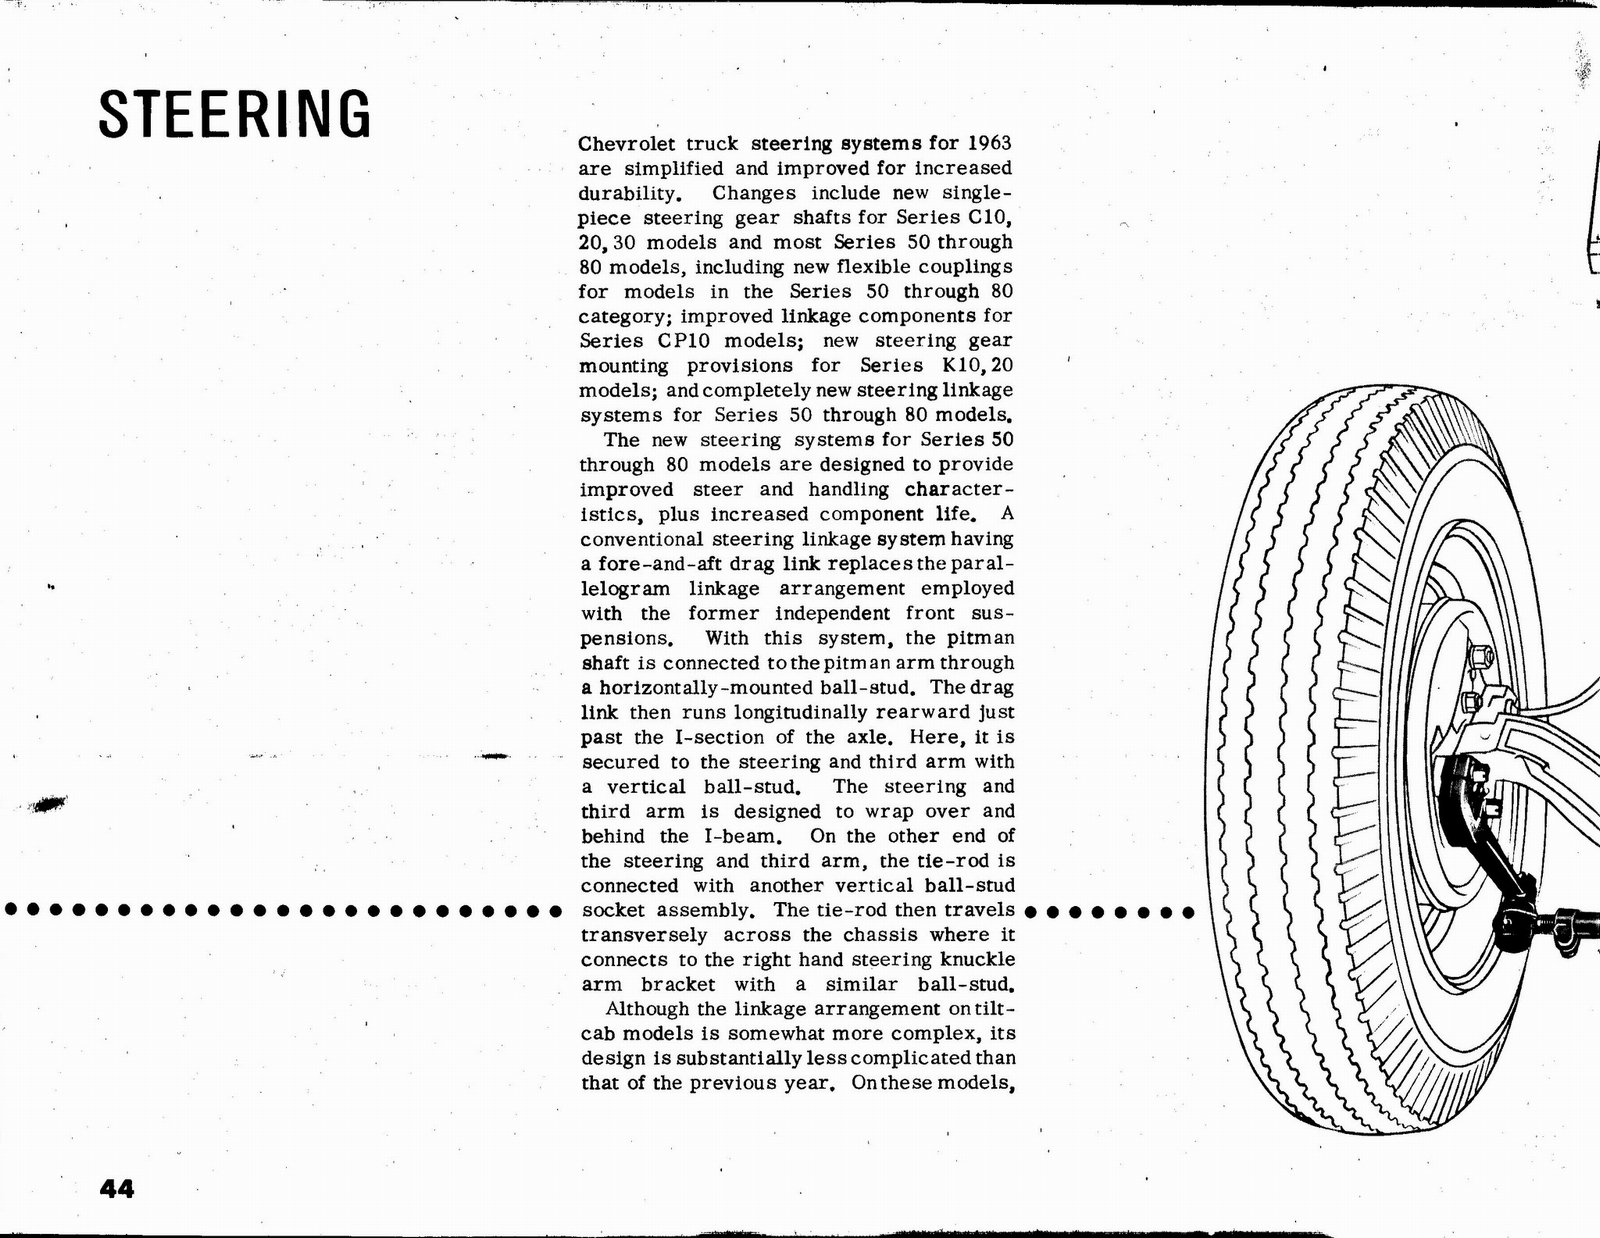 n_1963 Chevrolet Truck Engineering Features-44.jpg